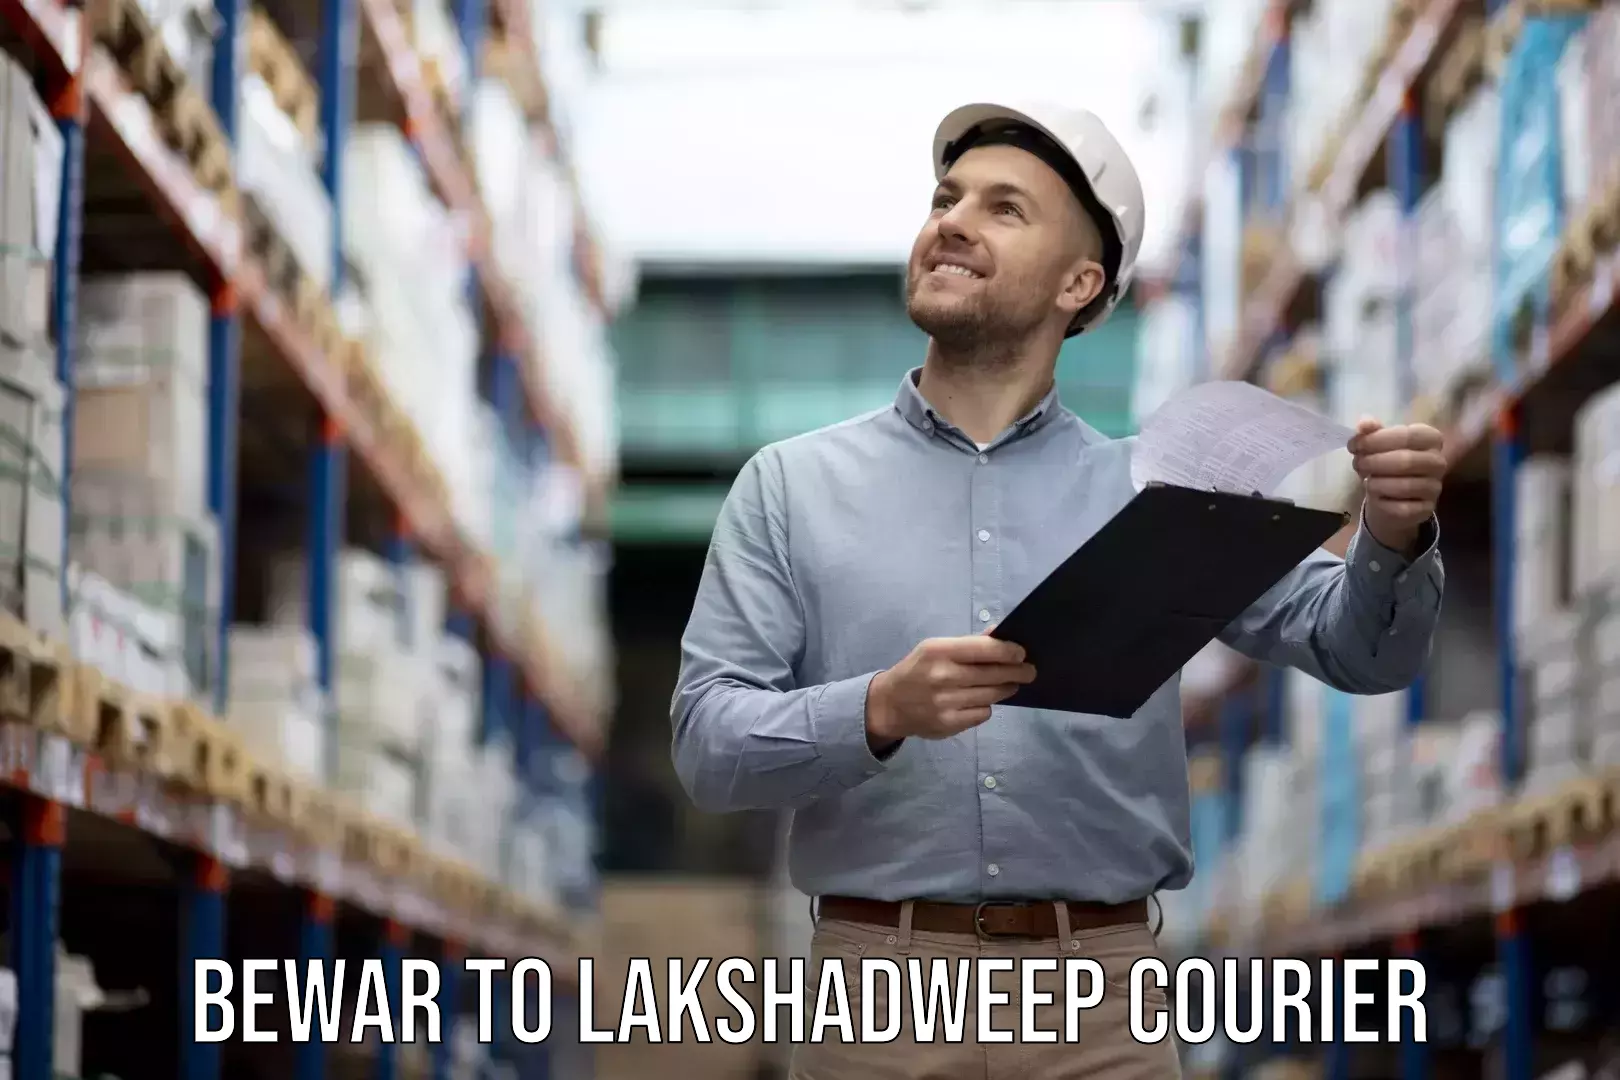 Furniture transport experts Bewar to Lakshadweep